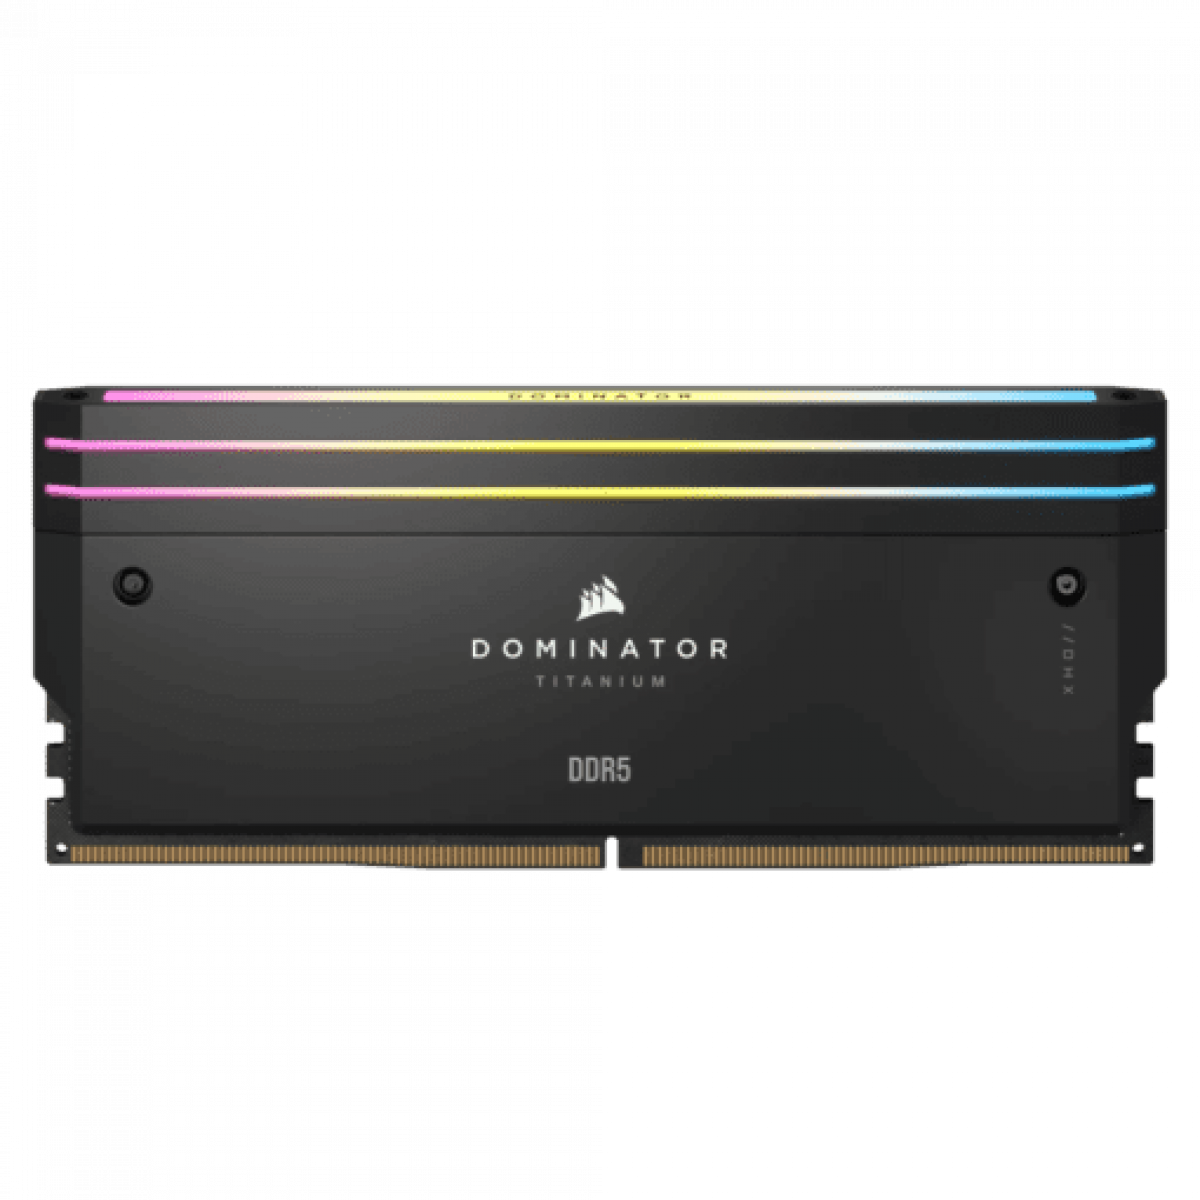 RAM DOMINATOR TITANIUM Black HeatspreaderDDR5, 6000MT/s 64GB 2x32GB DIMM, XMP 3.0, RGB LED, 1.4V